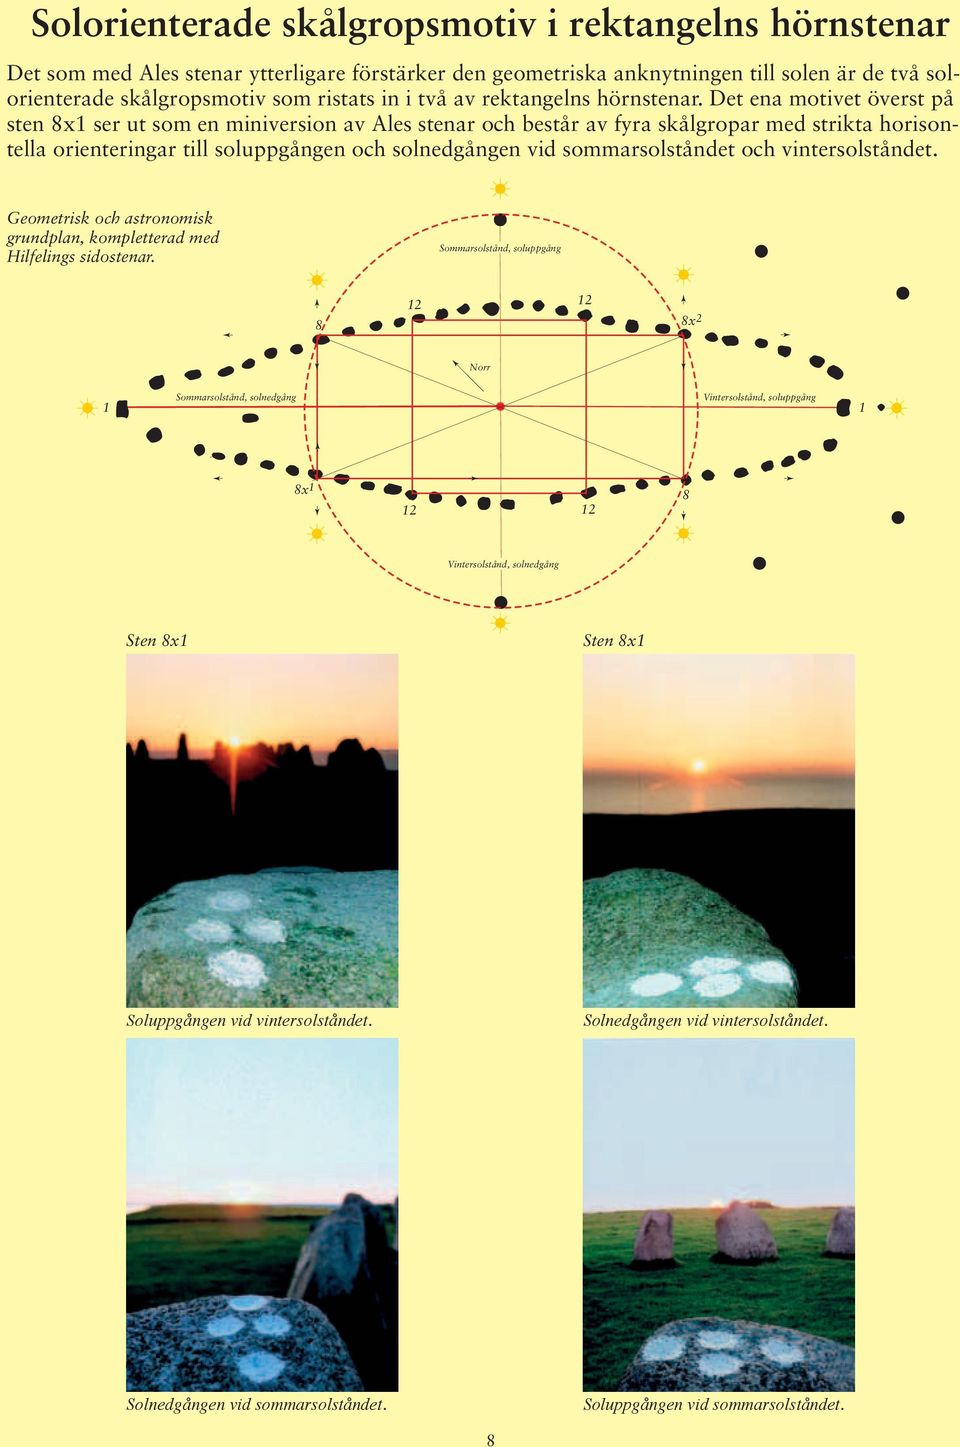 Det ena motivet överst på sten x1 ser ut som en miniversion av Ales stenar och består av fyra skålgropar med strikta horisontella orienteringar till soluppgången och solnedgången vid sommarsolståndet